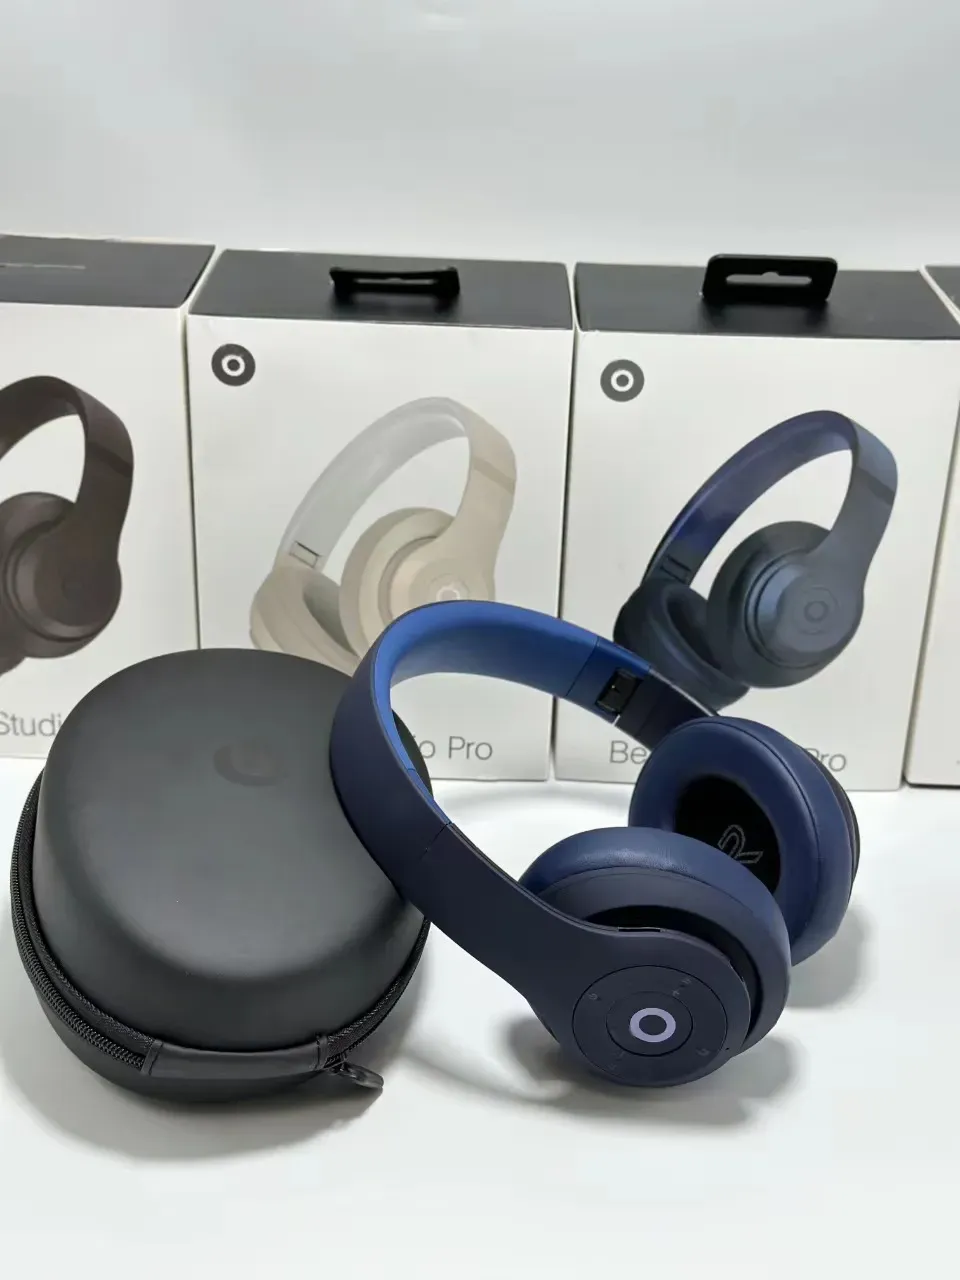 Studio Pro Wireless Headphones Ruído Bluetooth Cancelamento de Batido de fone de ouvido Headset Head Head Headset Wireless Headset11 Earófon sem fio 57